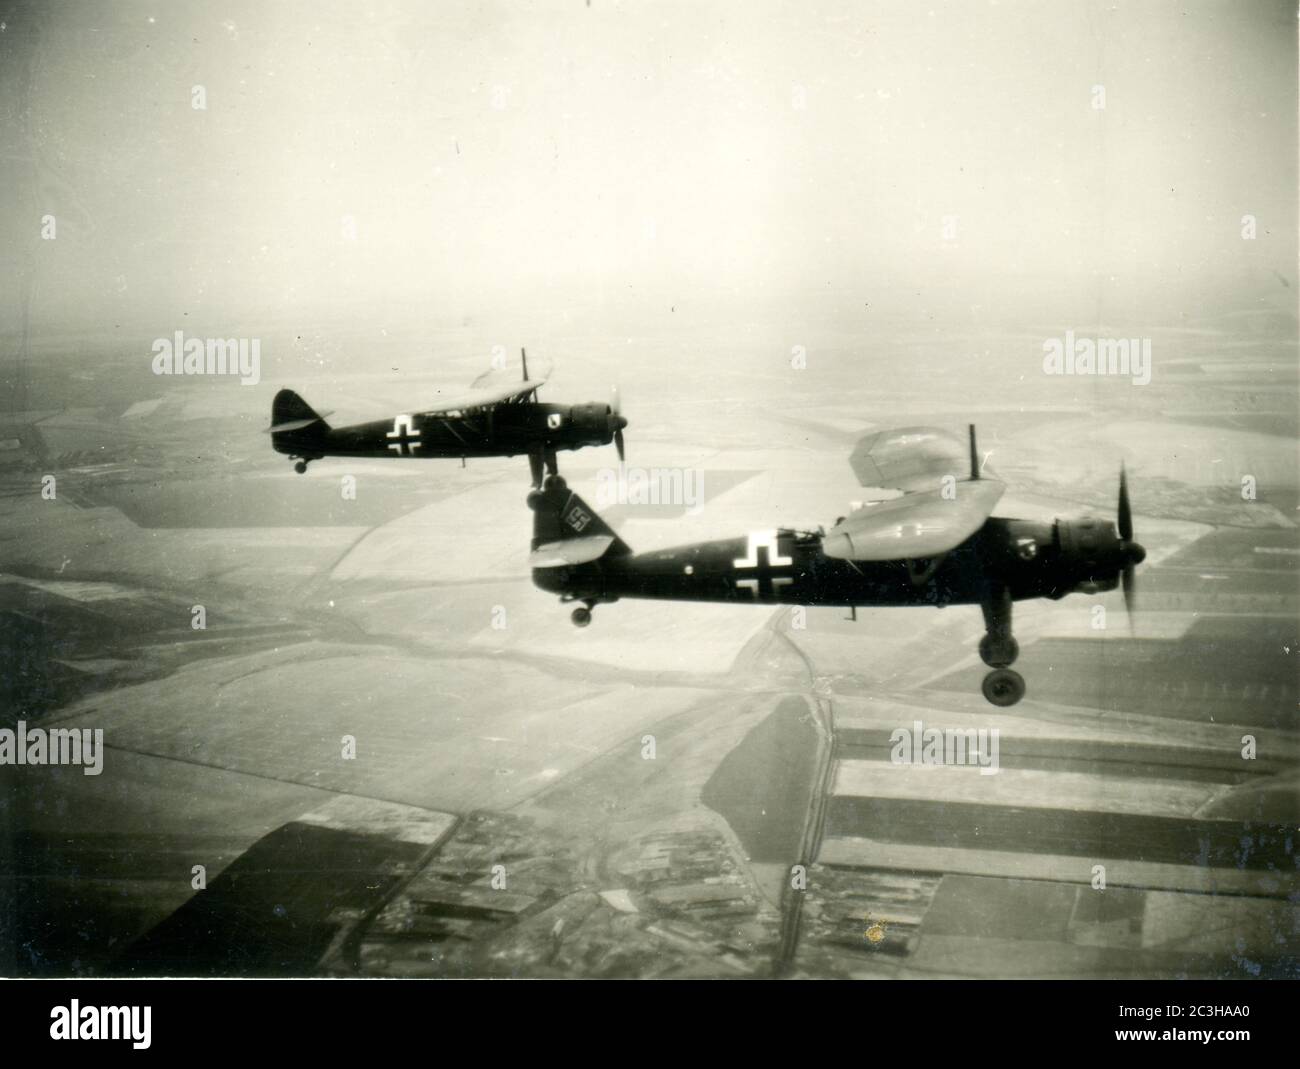 Seconda guerra mondiale / seconda guerra mondiale - velivolo tedesco da ricognizione Henschel HS 126 , guerra aerea, probabilmente a nord della Francia o del Belgio Foto Stock